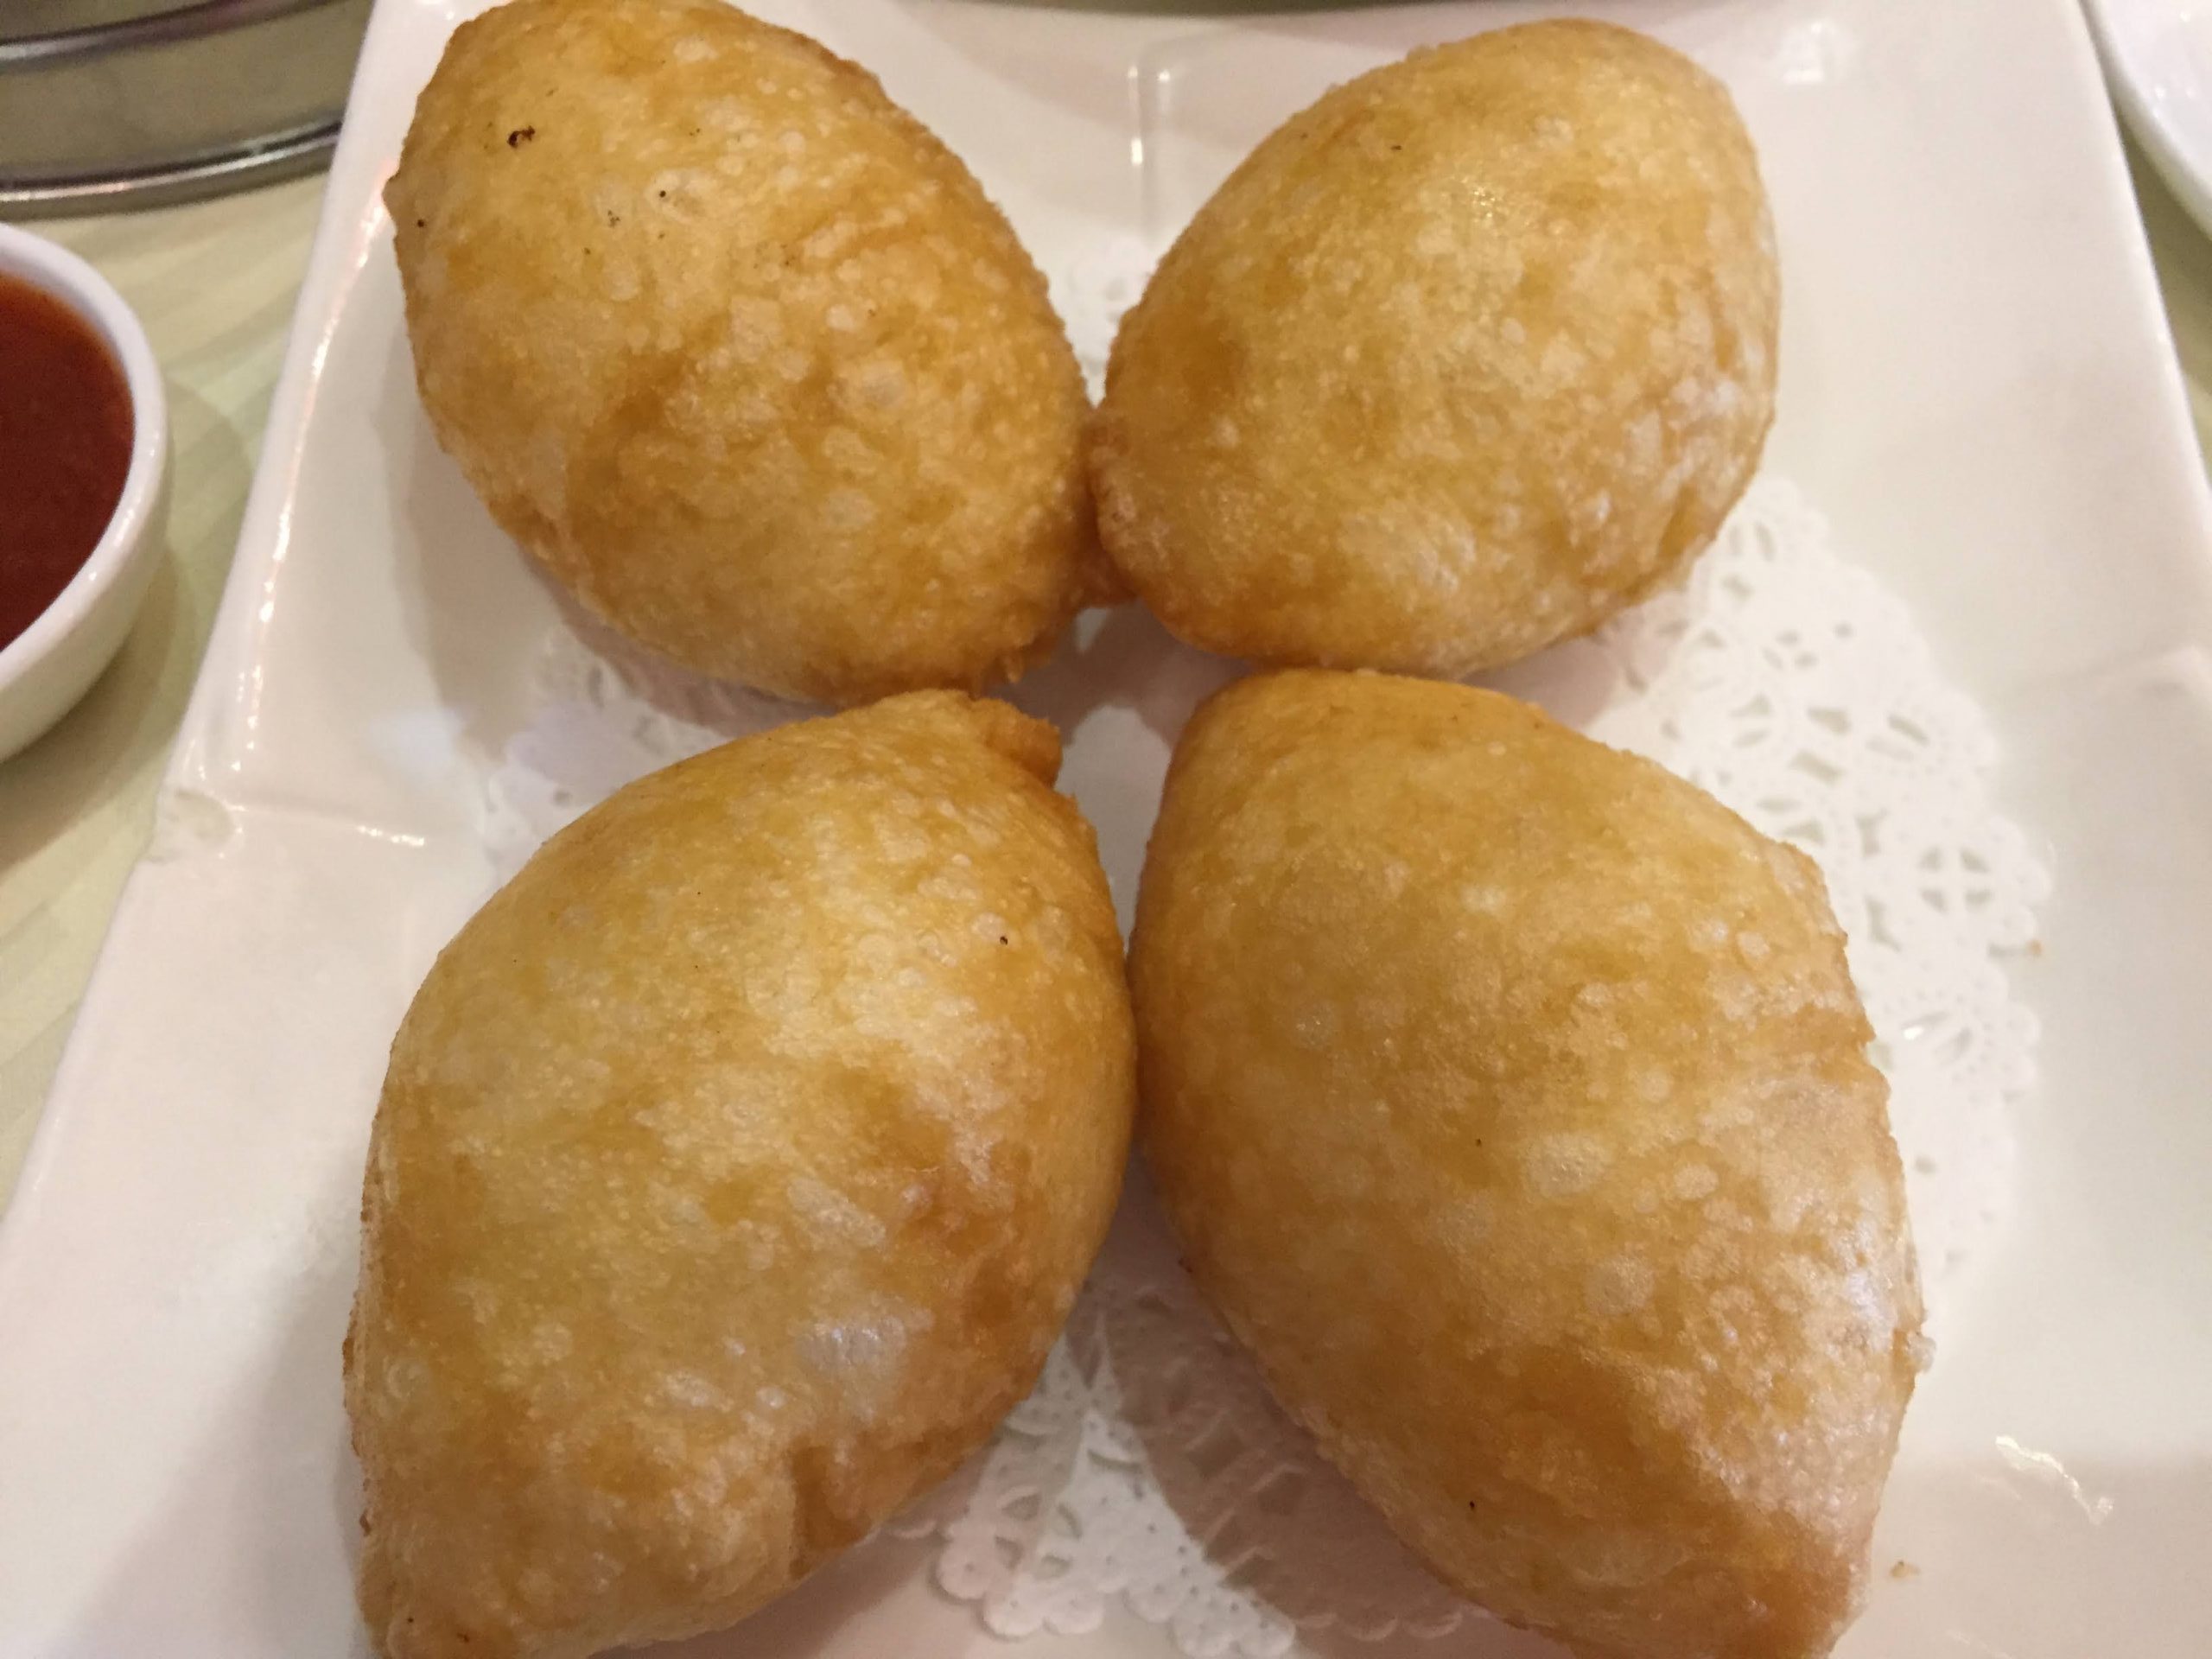 HAM SUI GOK (咸水角) - Beignets de farine de riz gluant farcis au